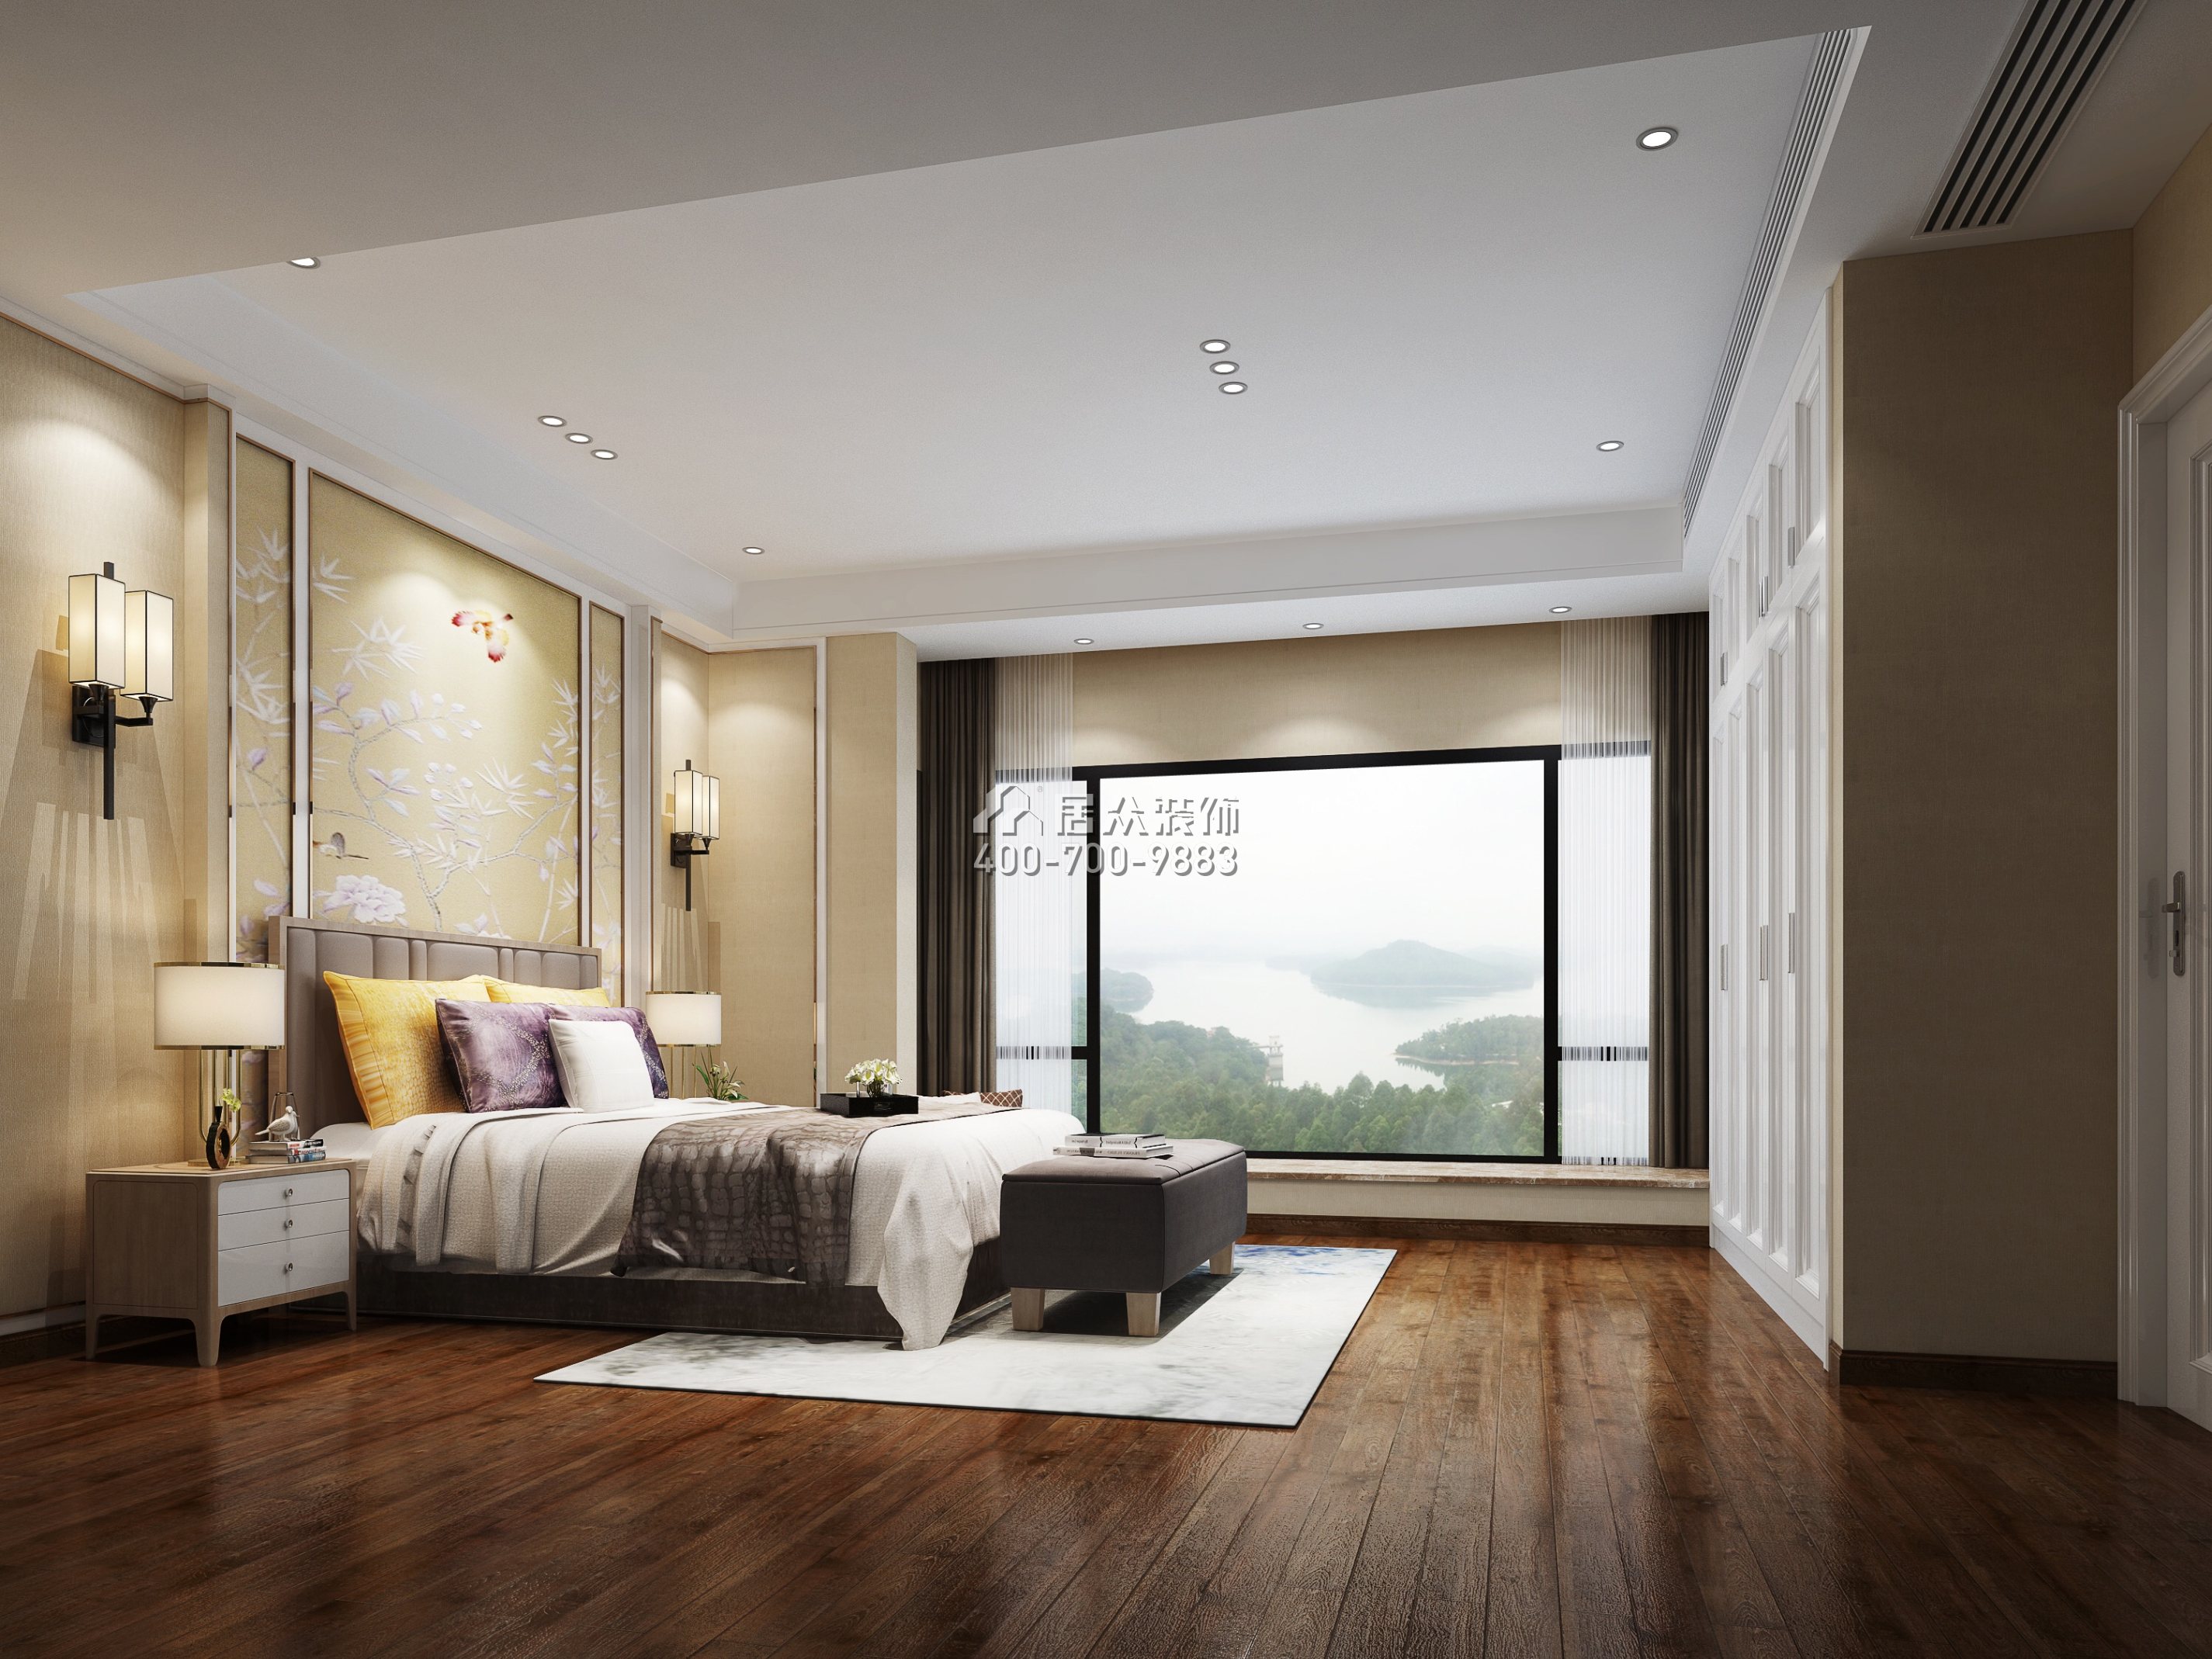 中海九号公馆189平方米新古典风格平层户型卧室装修效果图